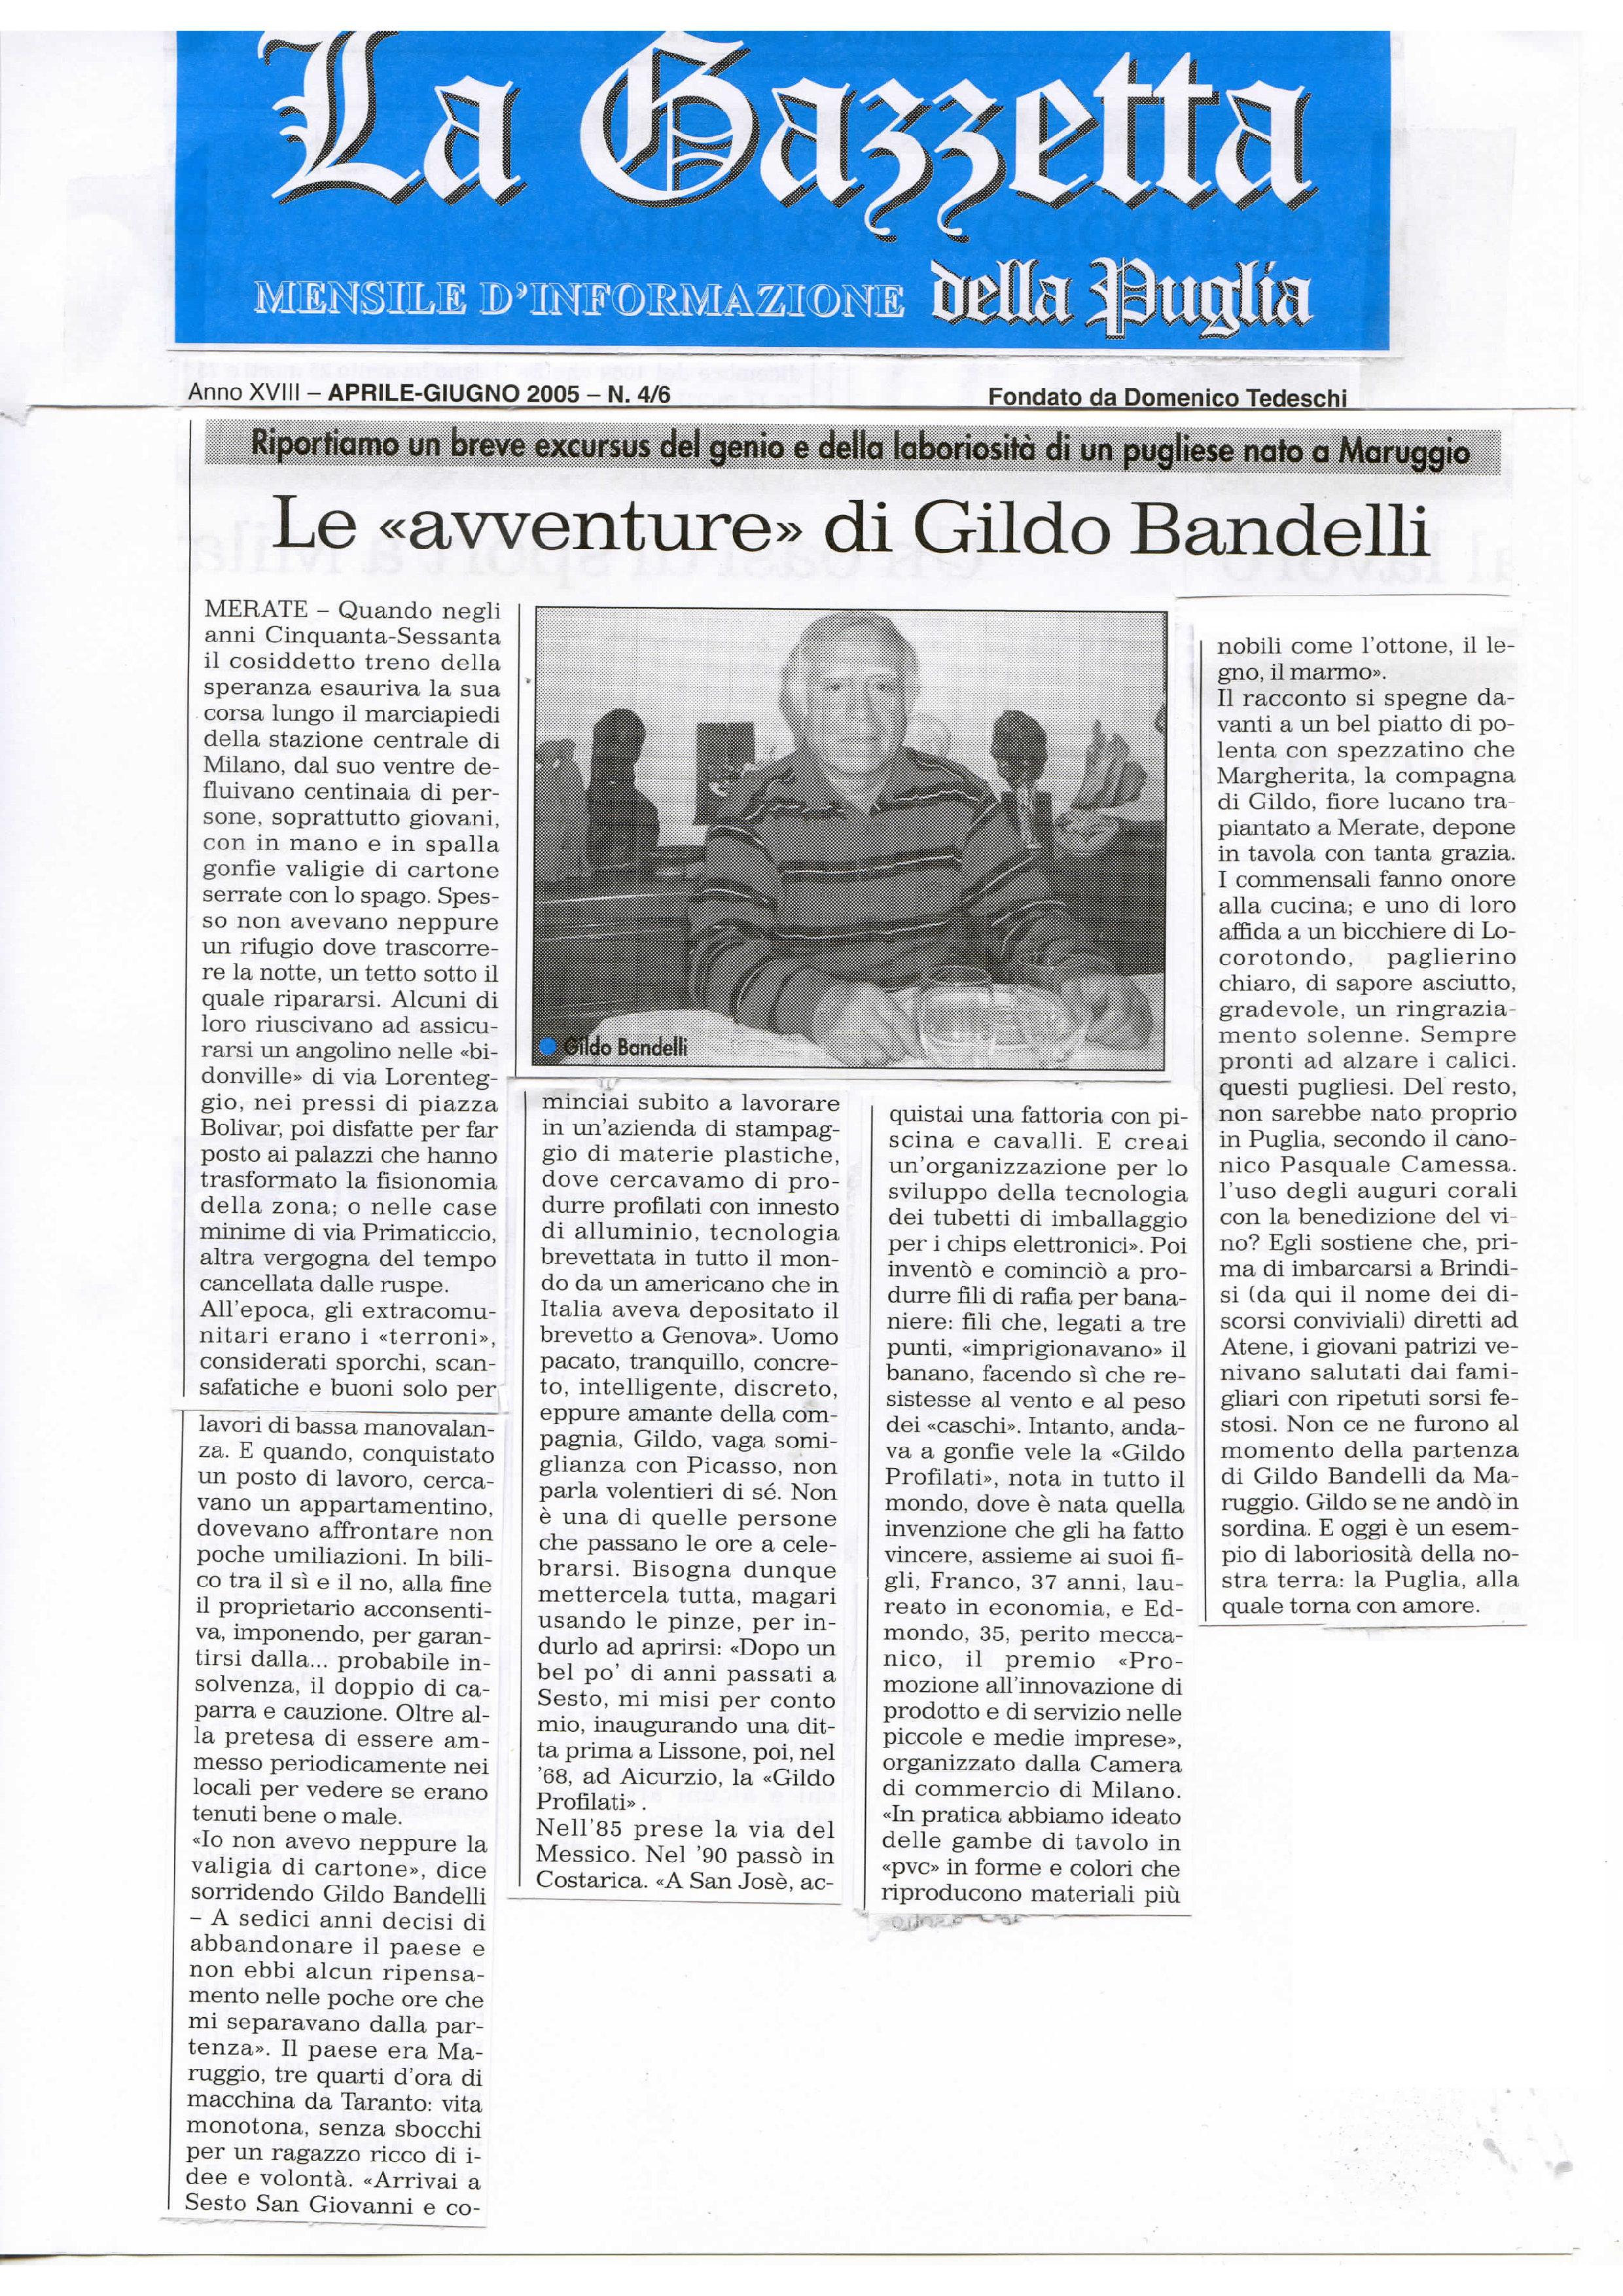 La Gazzetta della Puglia, Aprile-Giugno 2005